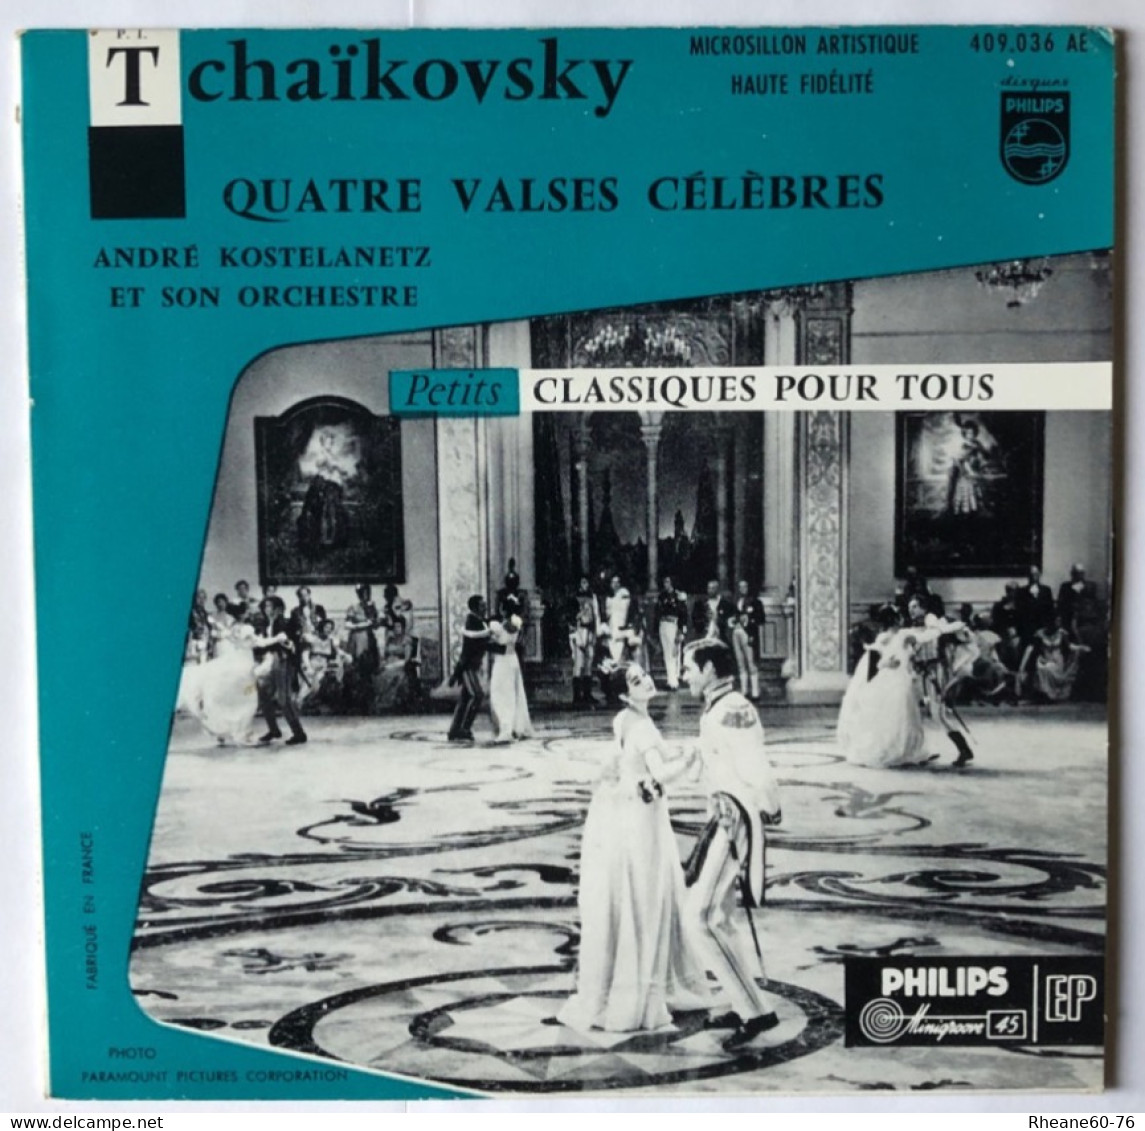 Philips 409.036 AE - 45T EP - Tchaïkovsky 4 Valses A Kostelanetz Et Son Orchestre- Microsillon Artistique Haute Fidélité - Formati Speciali